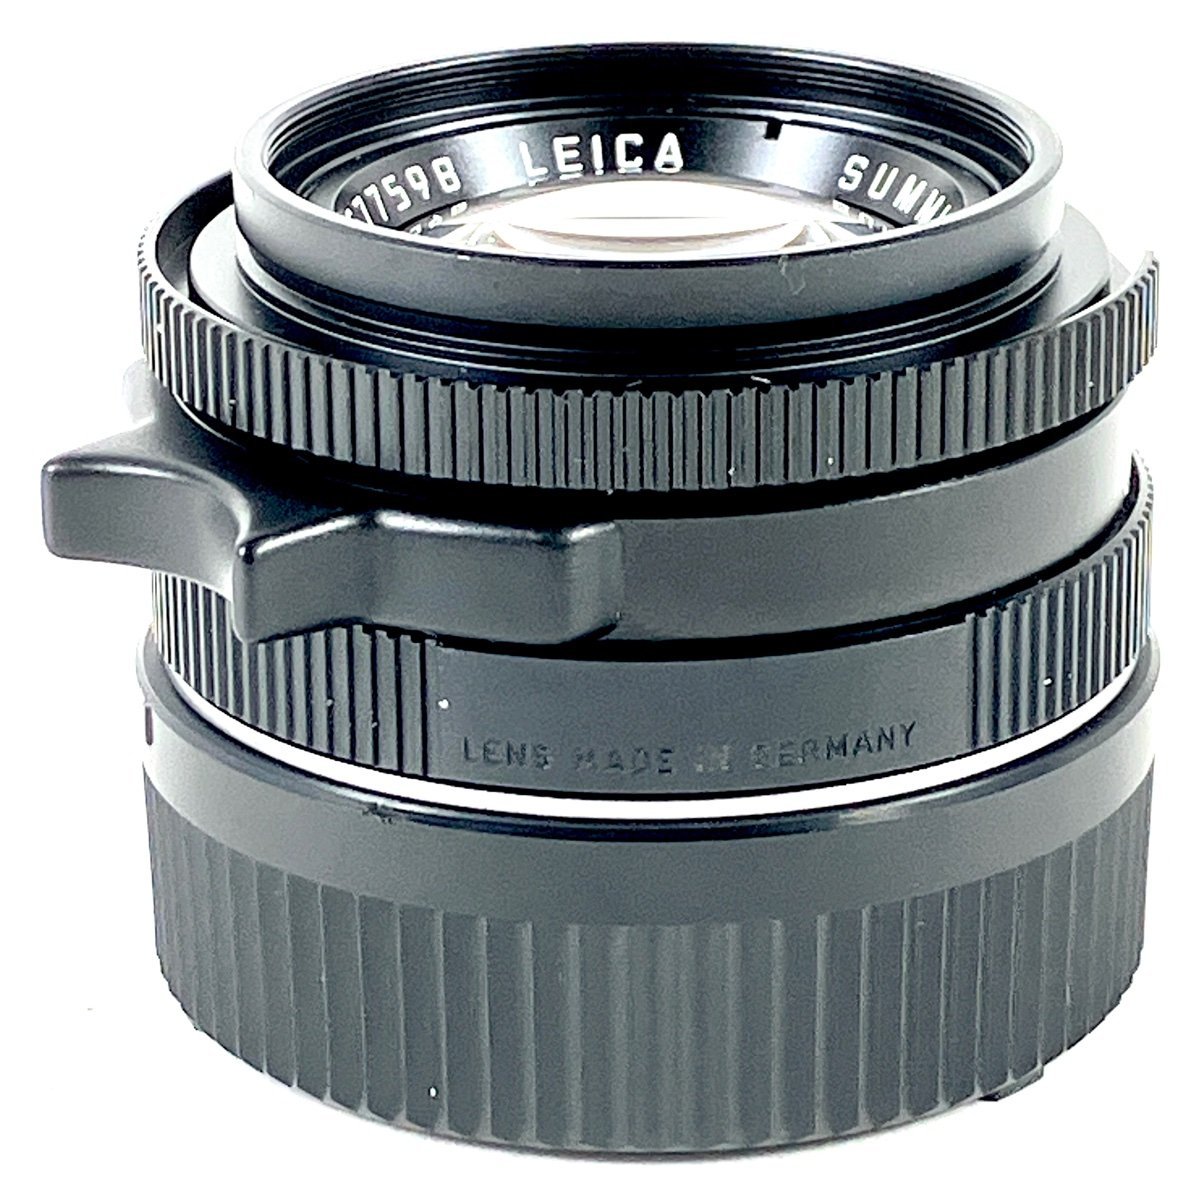 ライカ LEICA SUMMICRON-M 35mm F2 ズミクロン E39 第4世代 7枚玉 レンジファインダーカメラ用レンズ 【中古】_バイセル 31066_2